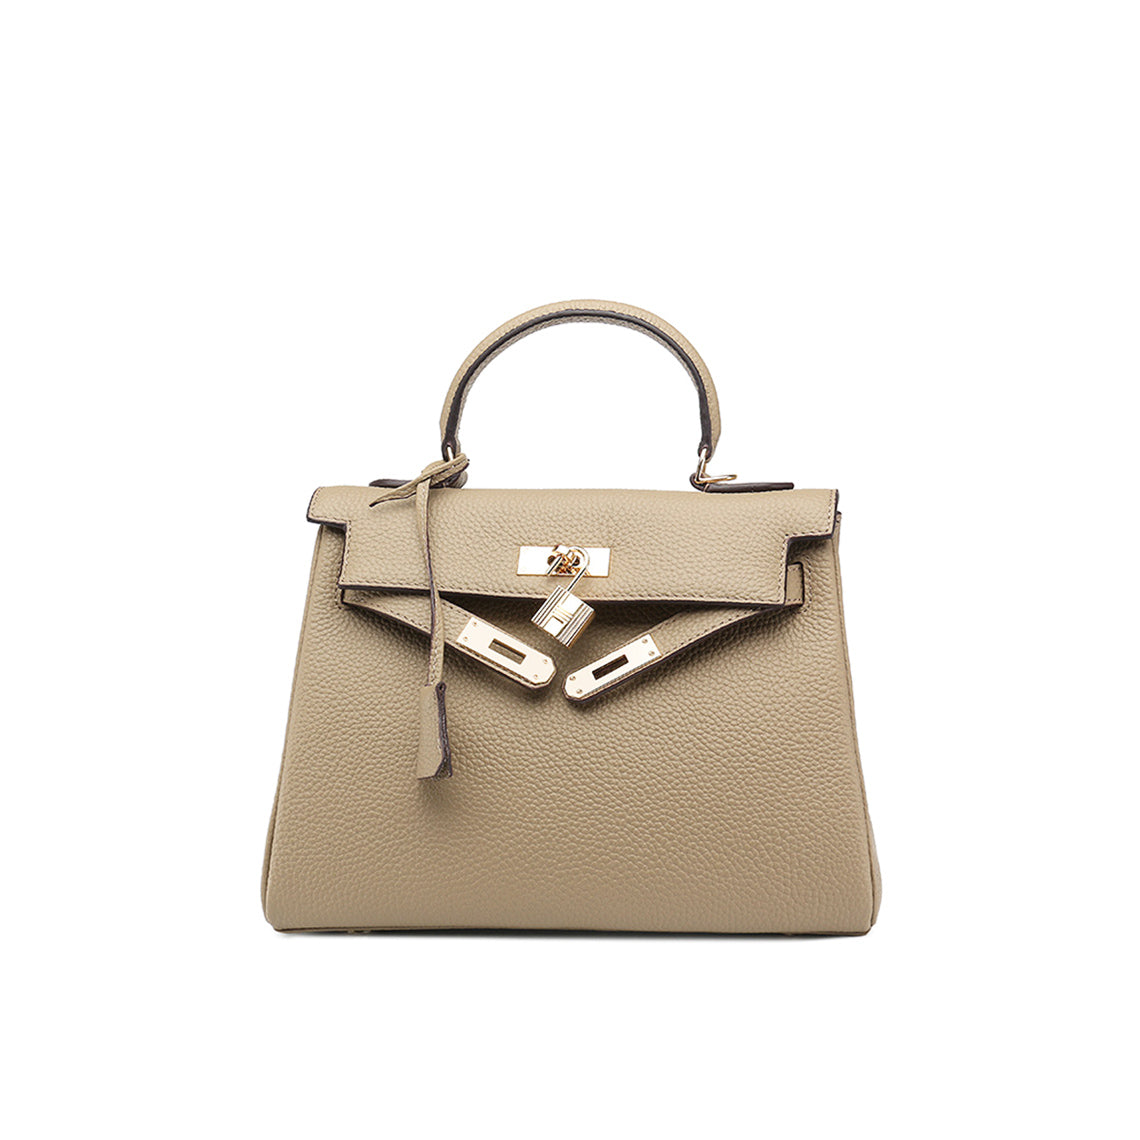 Designer Kelly Handbags | Beige Color Leather Handbag for Women - POPSEWING™